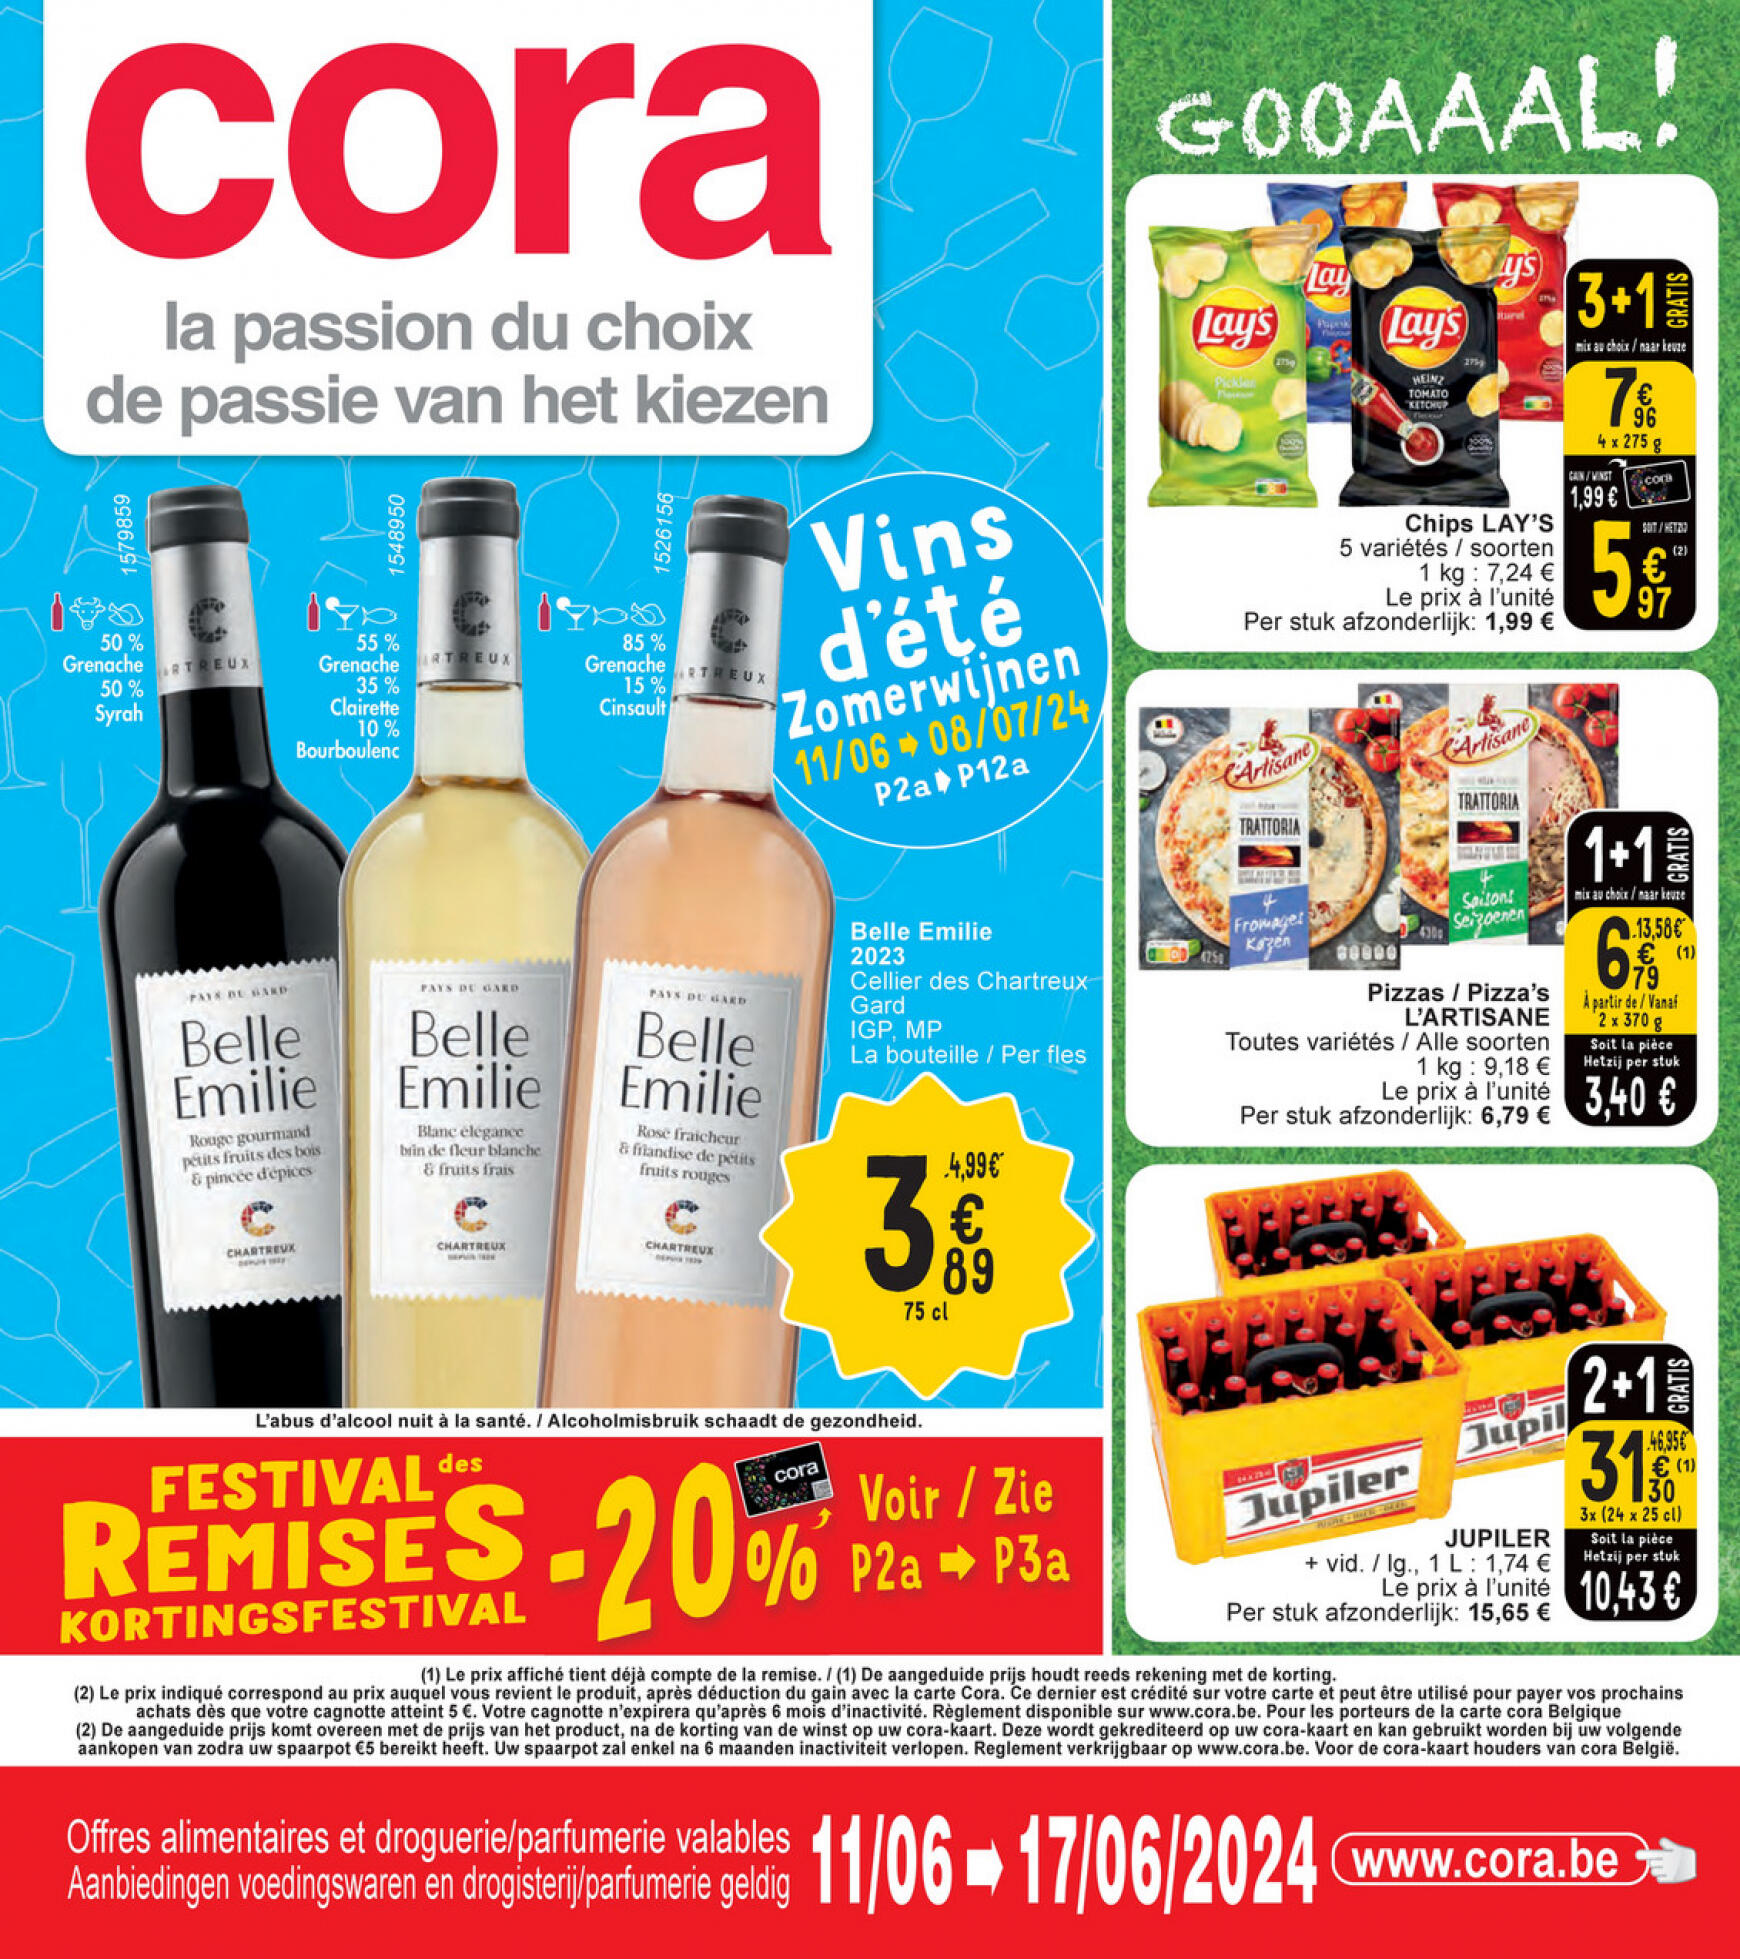 cora - Cora - Les vins d'été folder huidig 11.06. - 17.06. - page: 1